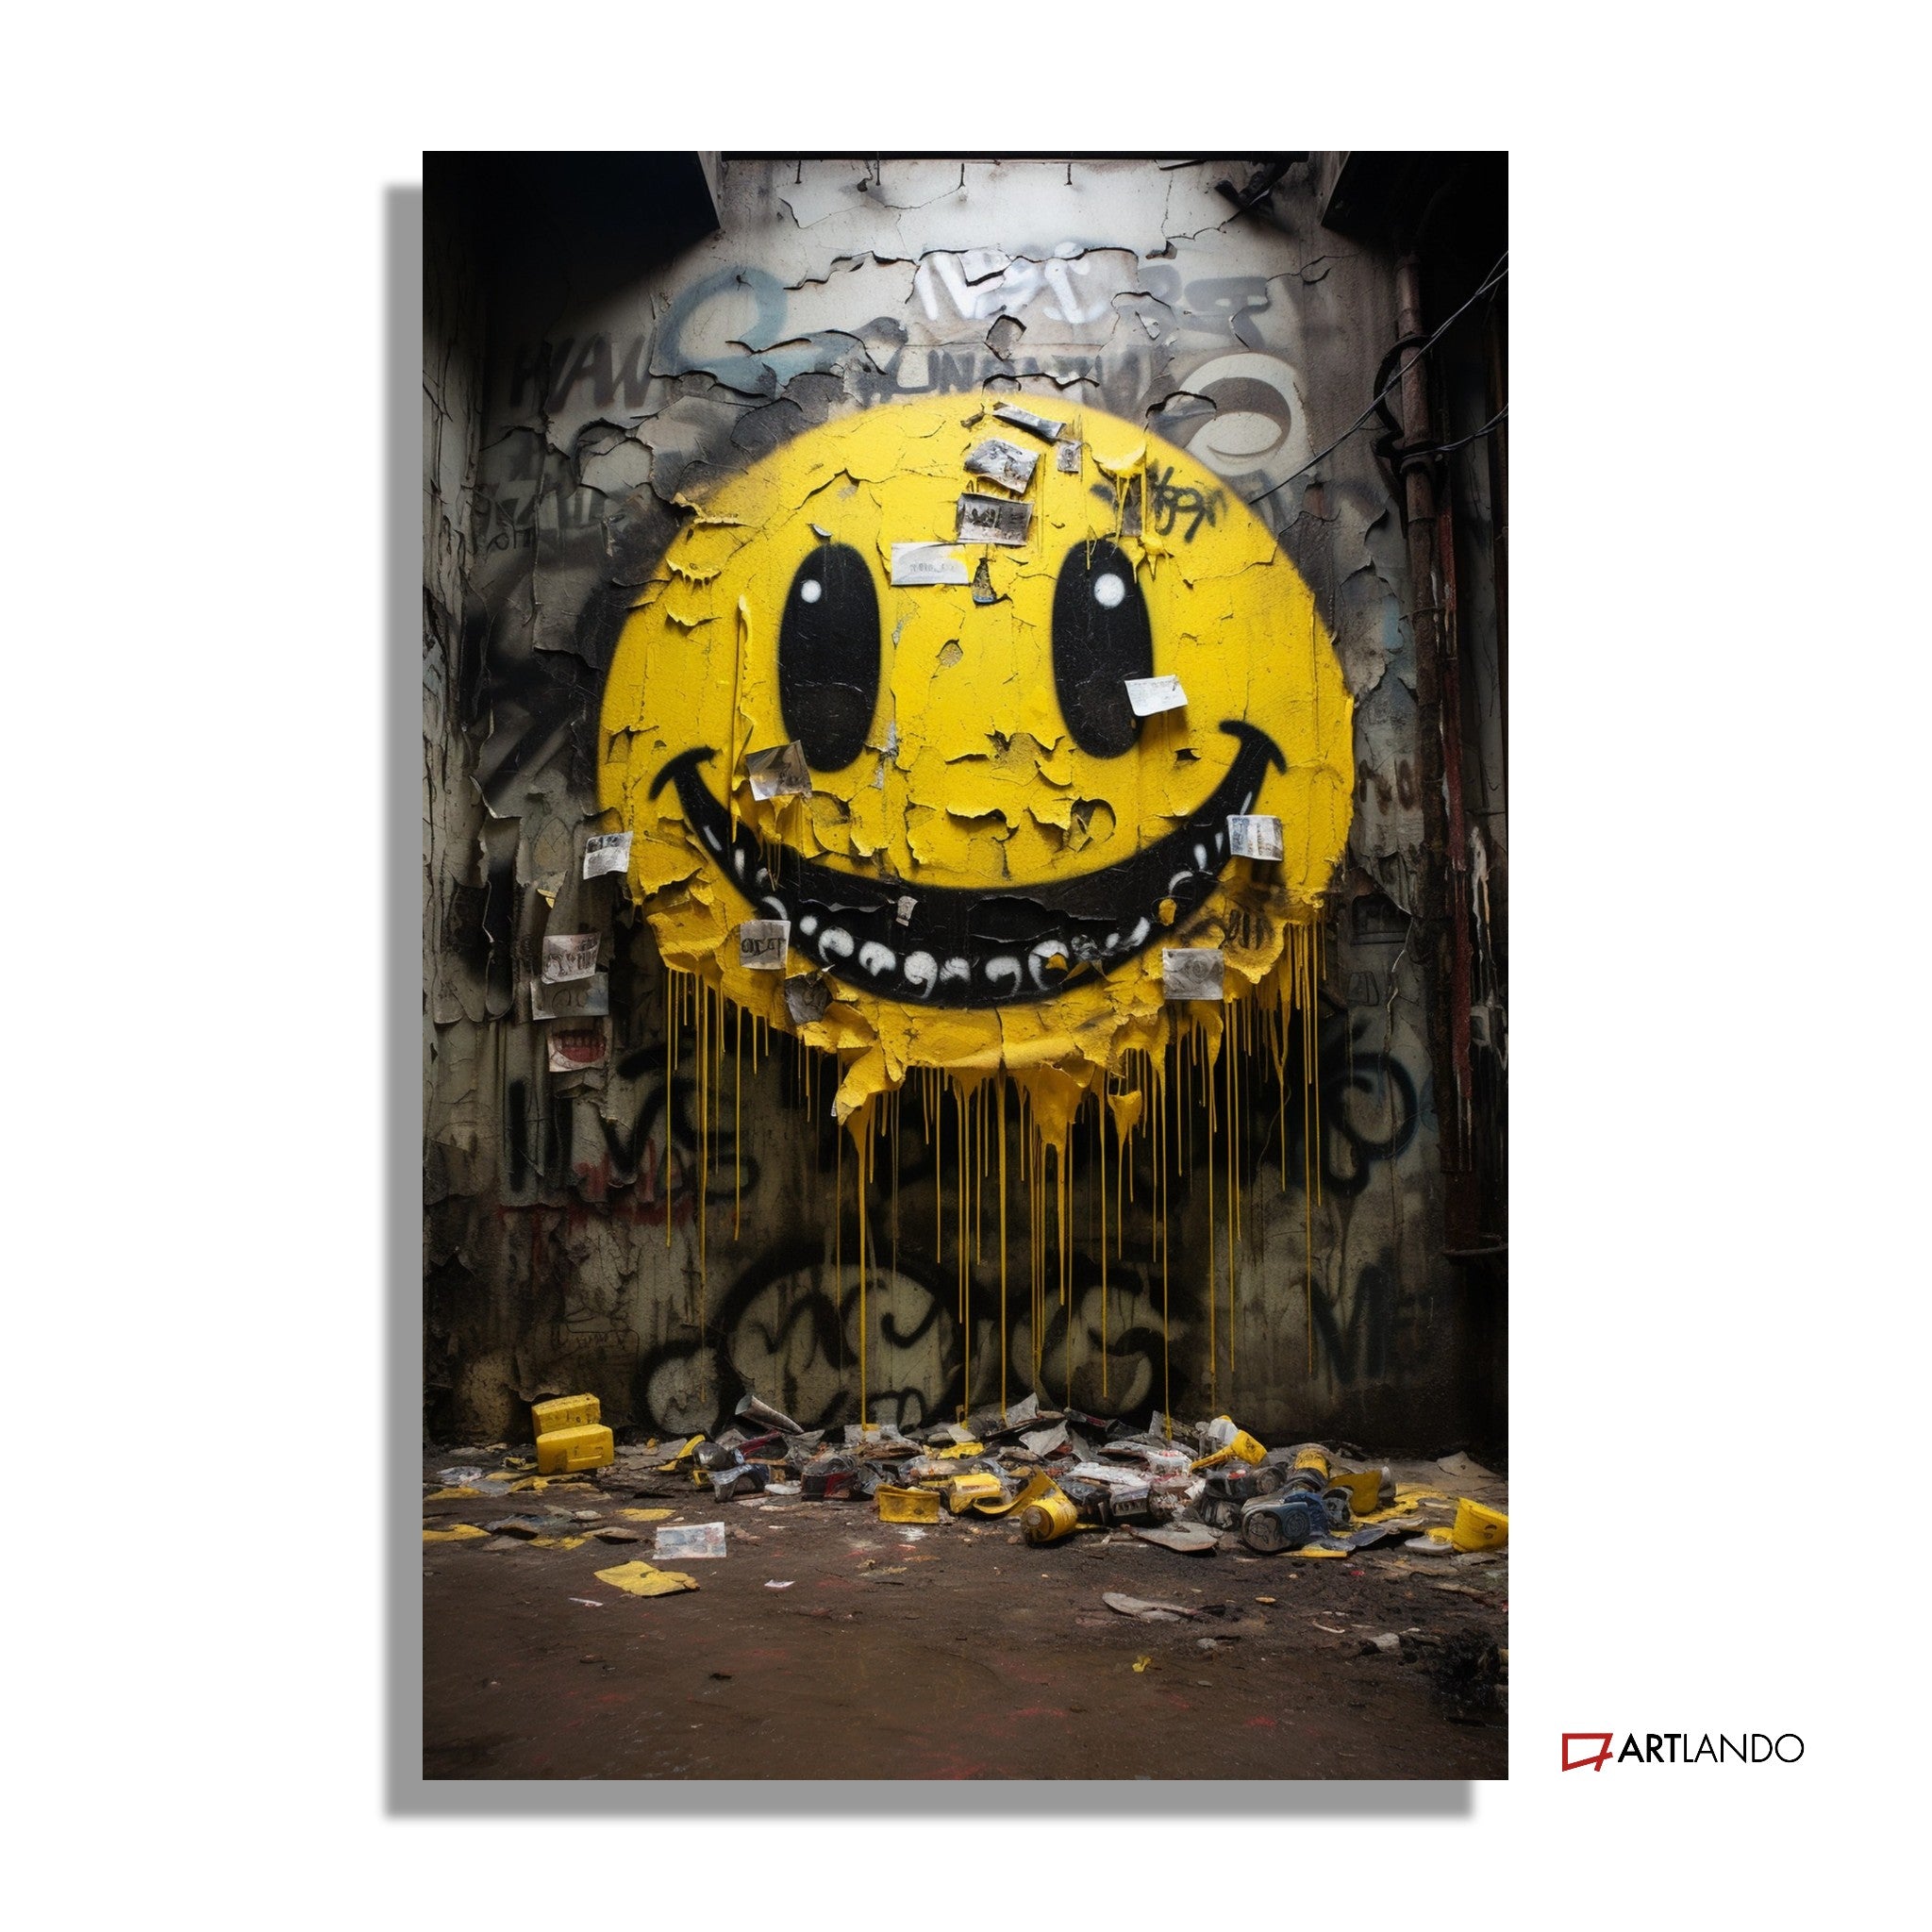 Grinsendes Smiley-Graffiti auf beleuchteter Wand - Street Art